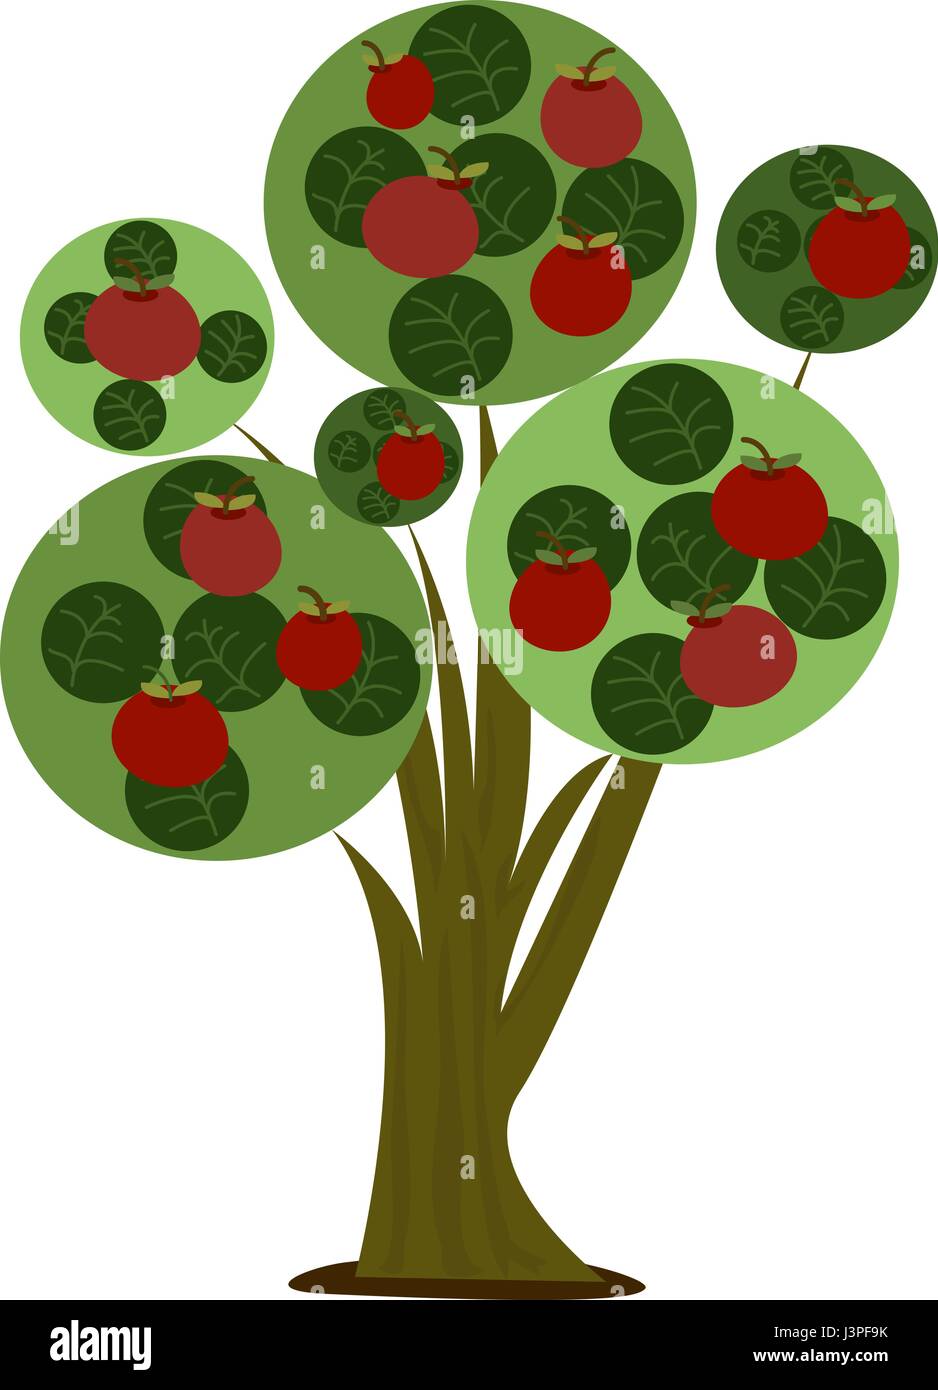 Apple Tree - Cartoon stilizzato illustrazione di un albero di mela Illustrazione Vettoriale